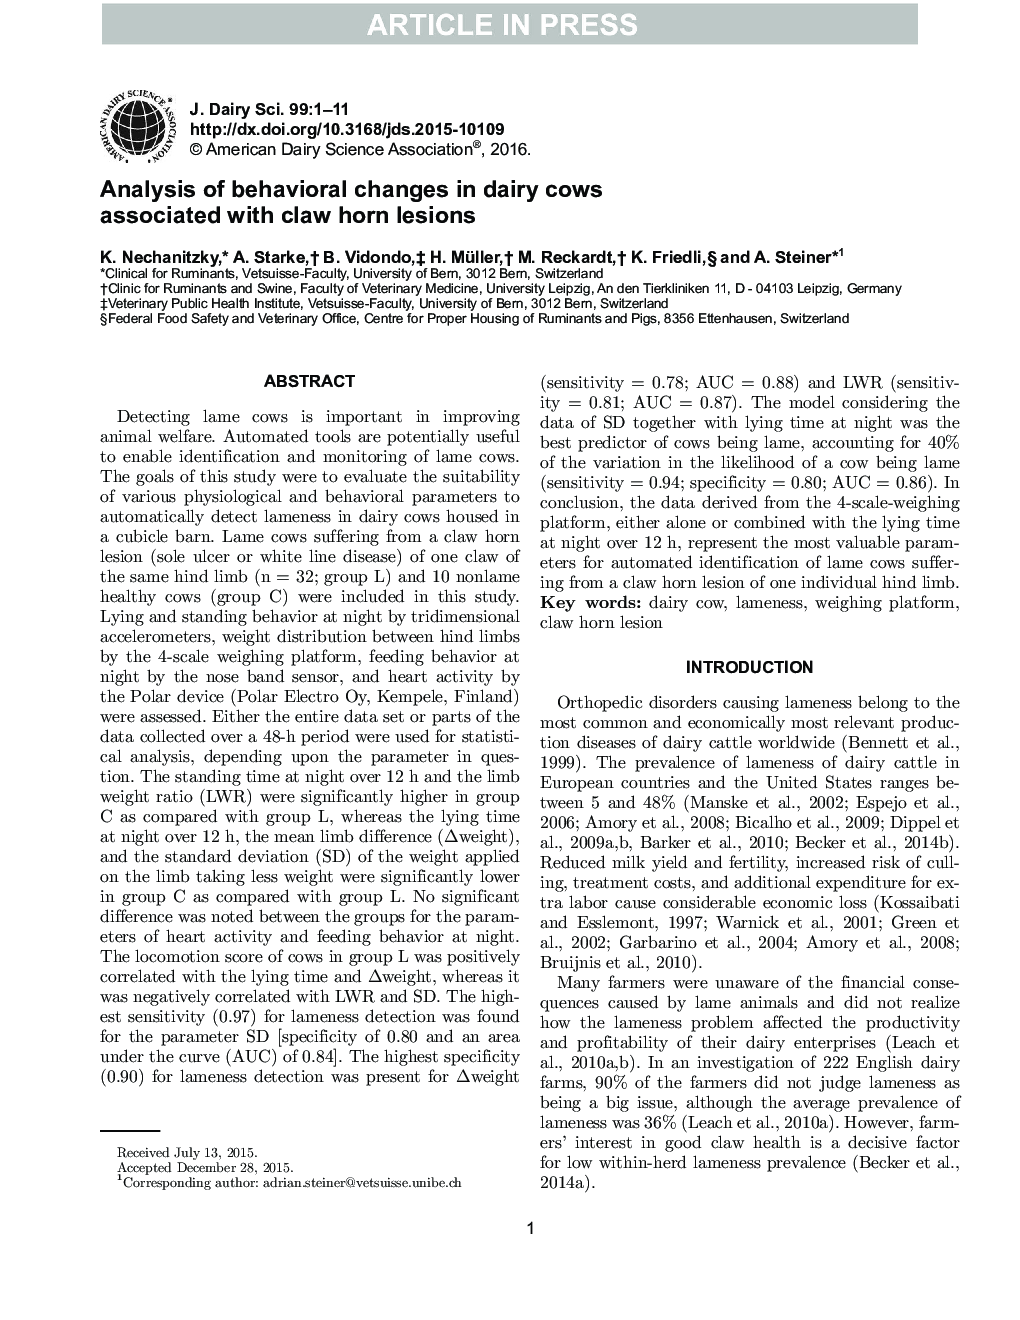 تجزیه و تحلیل تغییرات رفتاری در گاوهای شیری مرتبط با ضایعات ناخن پستان 